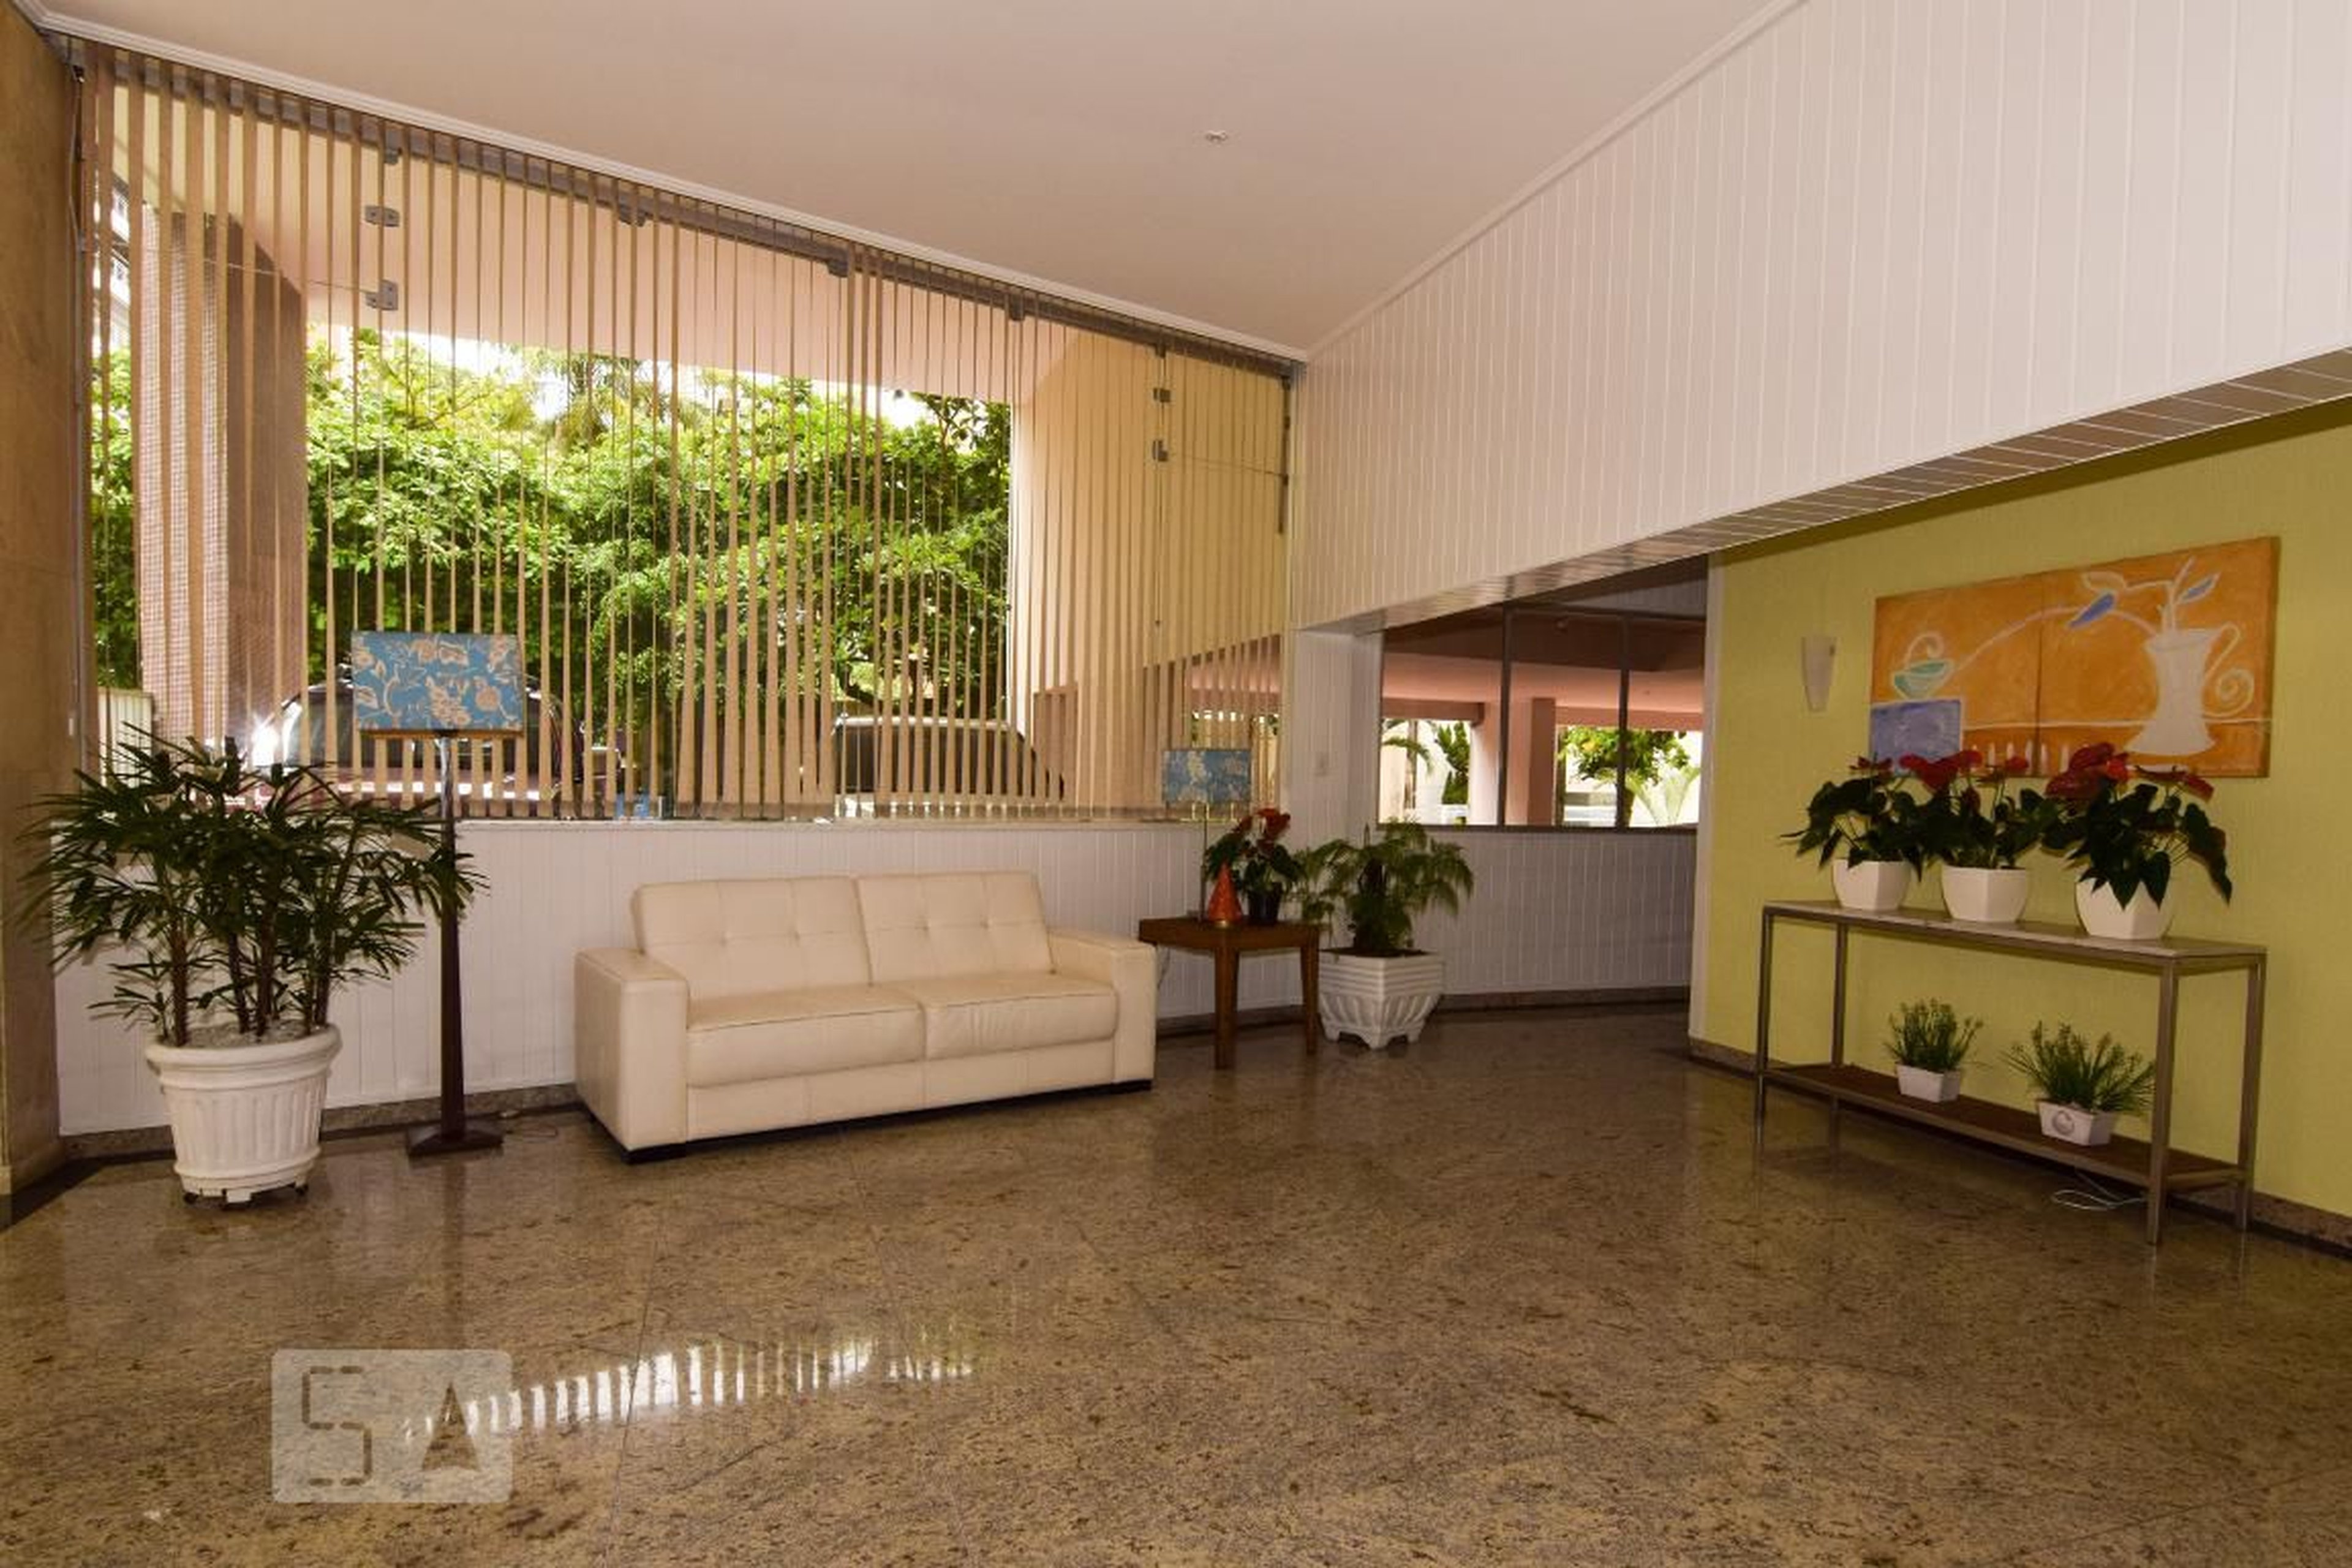 Hall de Entrada - Edifício Monte Serrat